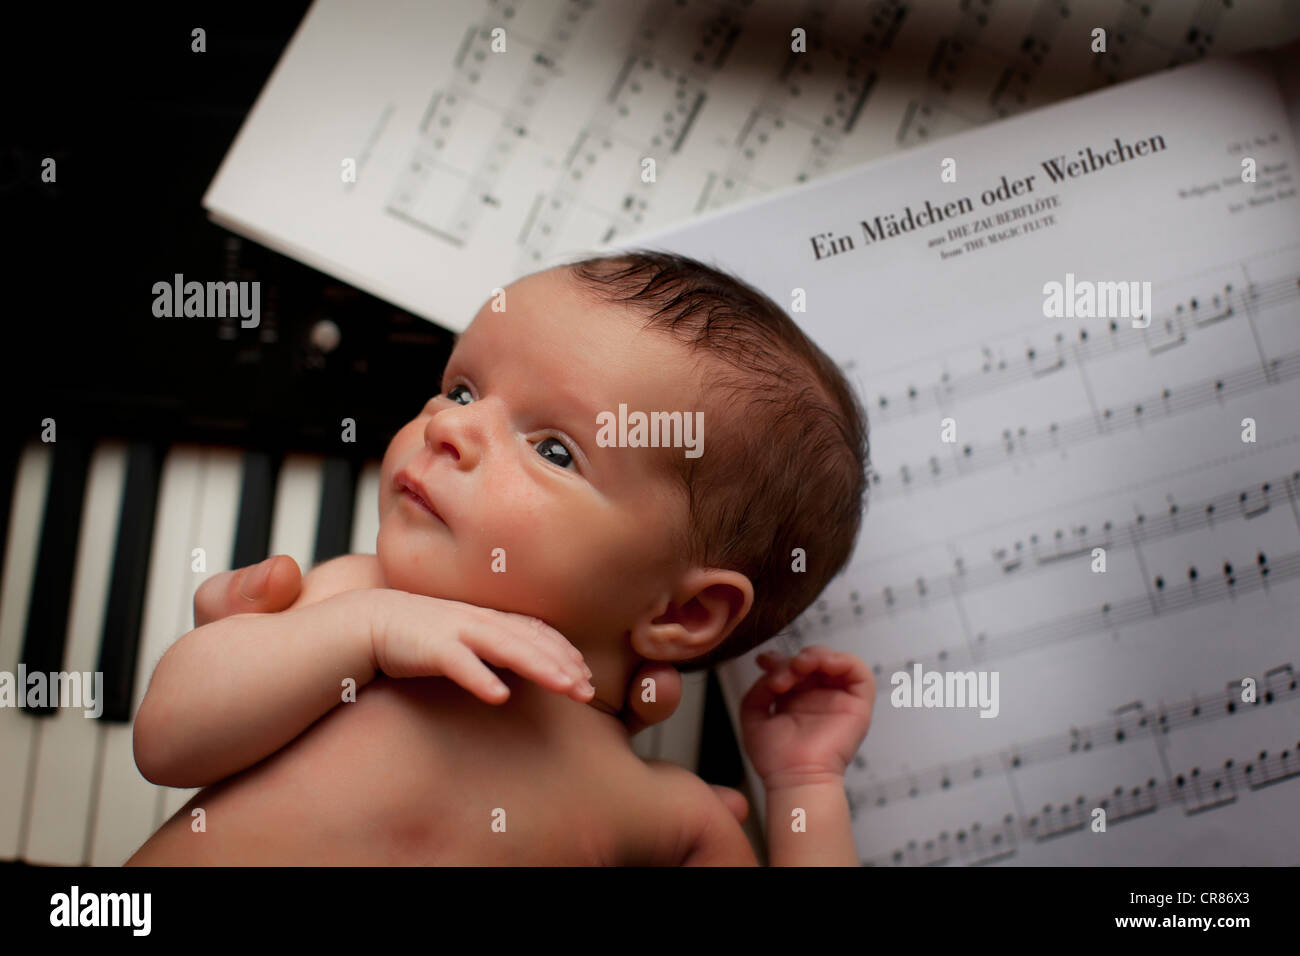 Newborn baby, two weeks, piano, sheet music Stock Photo